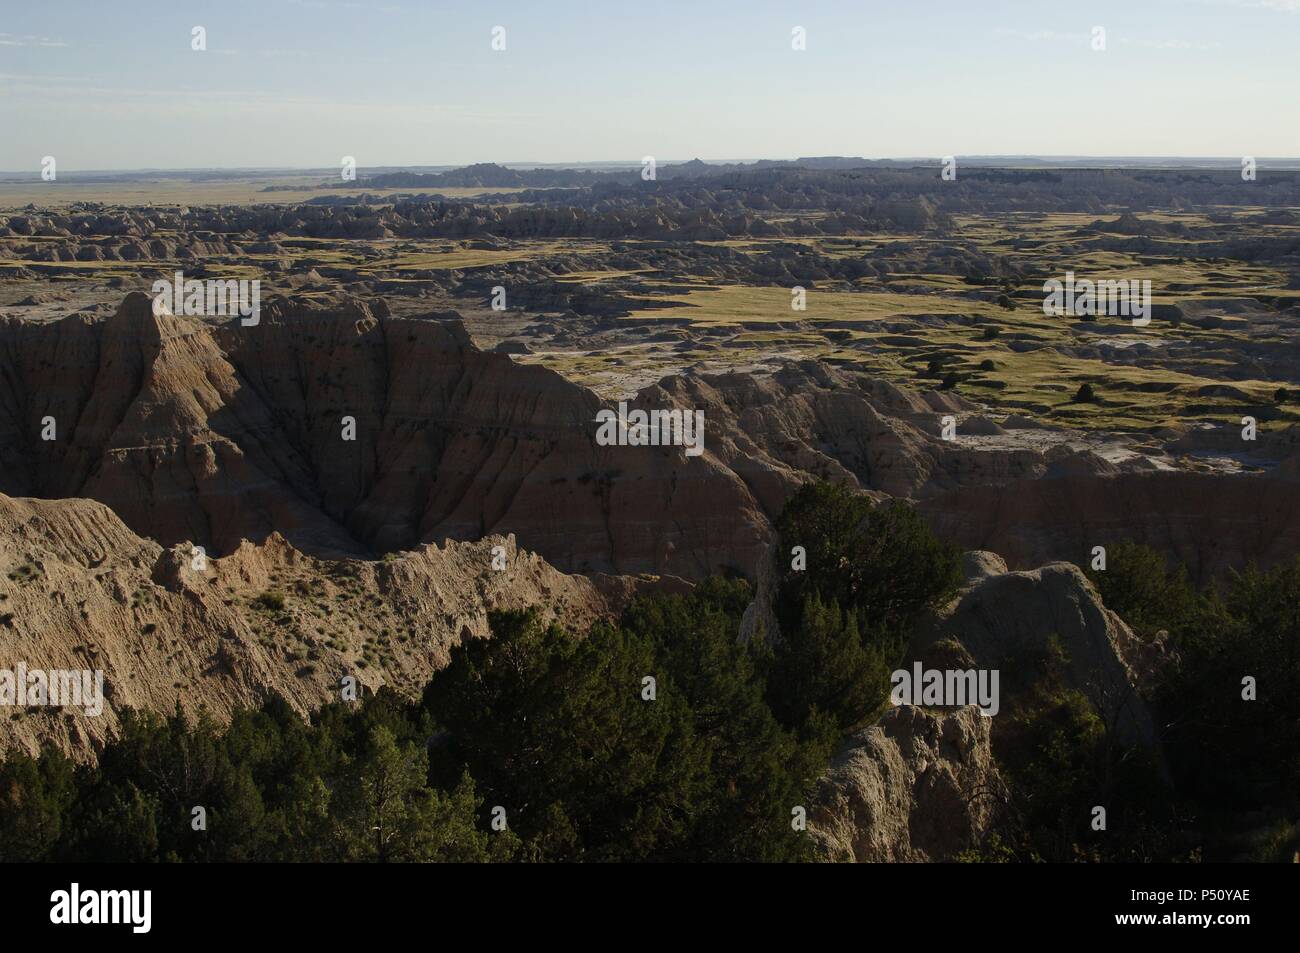 ESTADOS UNIDOS. Panorámica del paisaje del PARQUE NACIONAL BADLANDS (BADLANDS NATIONAL PARK). Estado de Dakota del Sur. Stock Photo